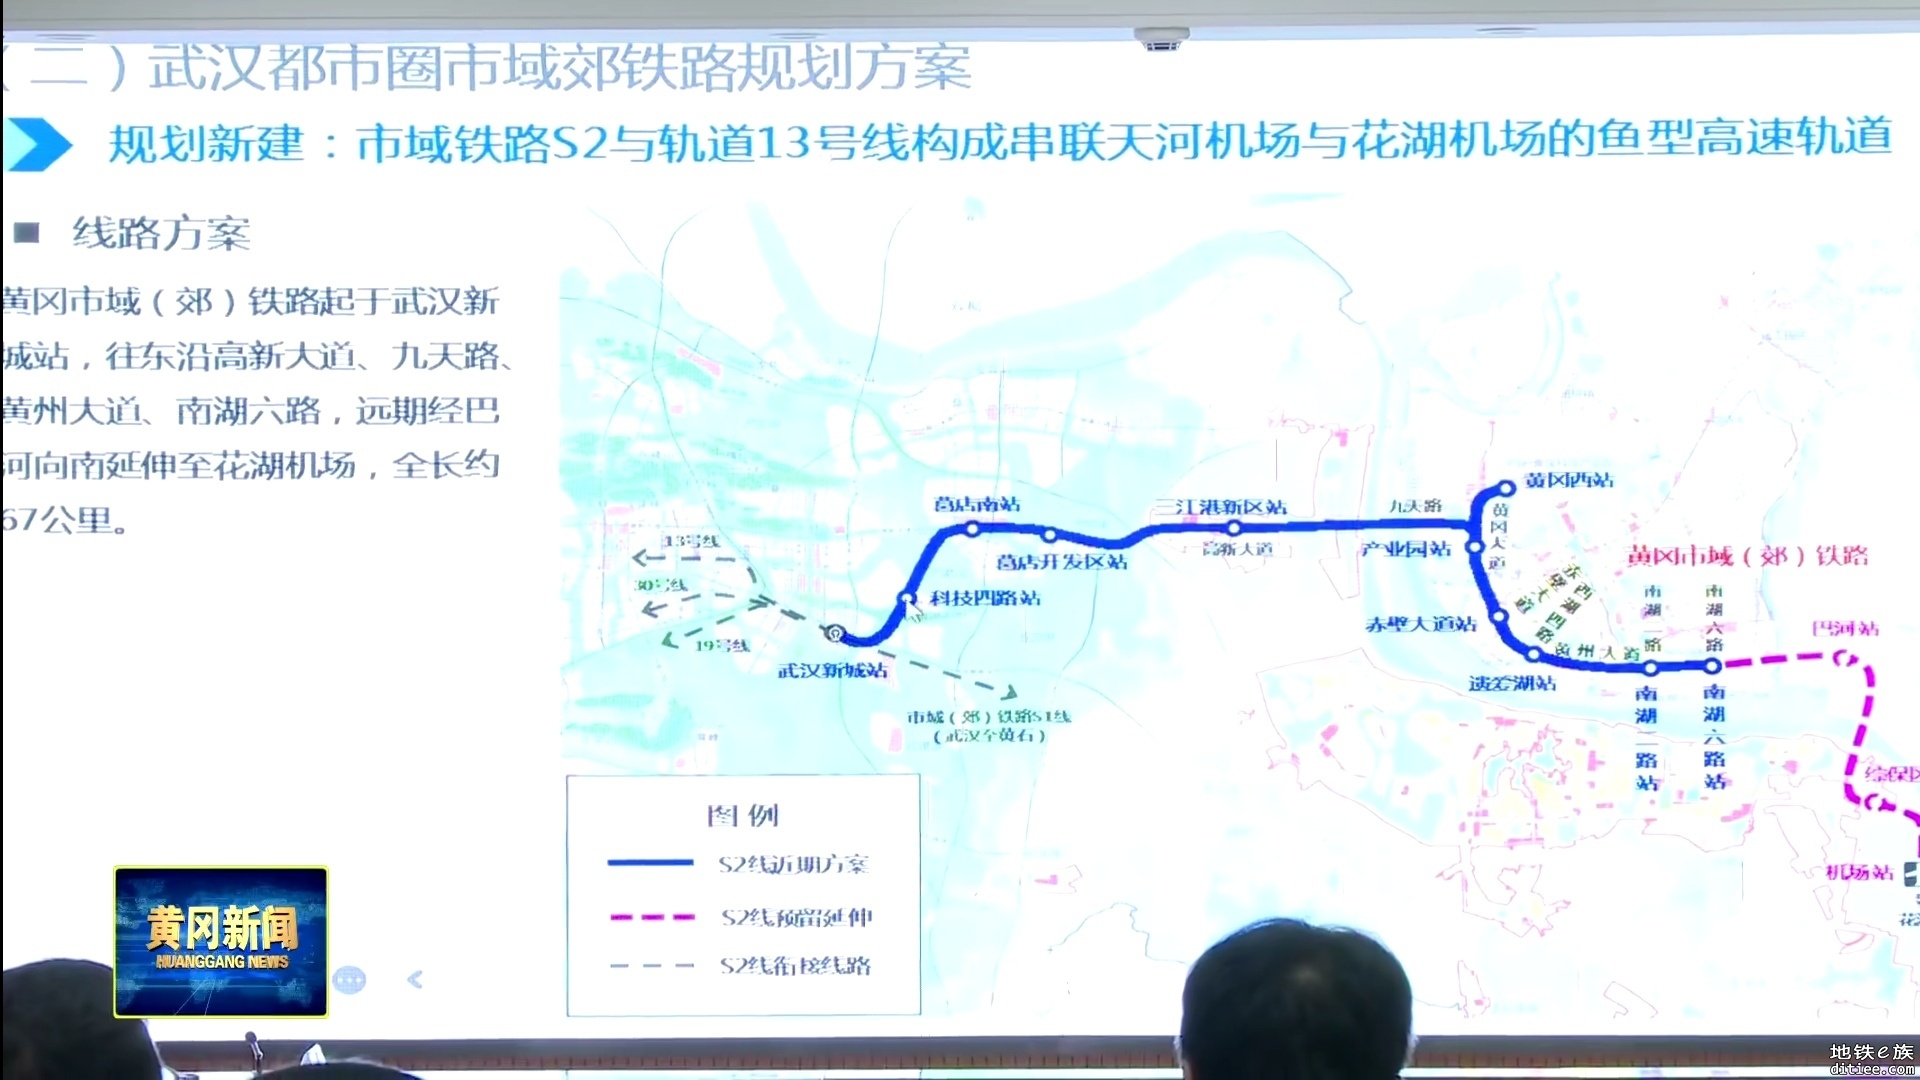 对“武汉地铁集团来黄冈市商洽工作”有效信息提取与看法